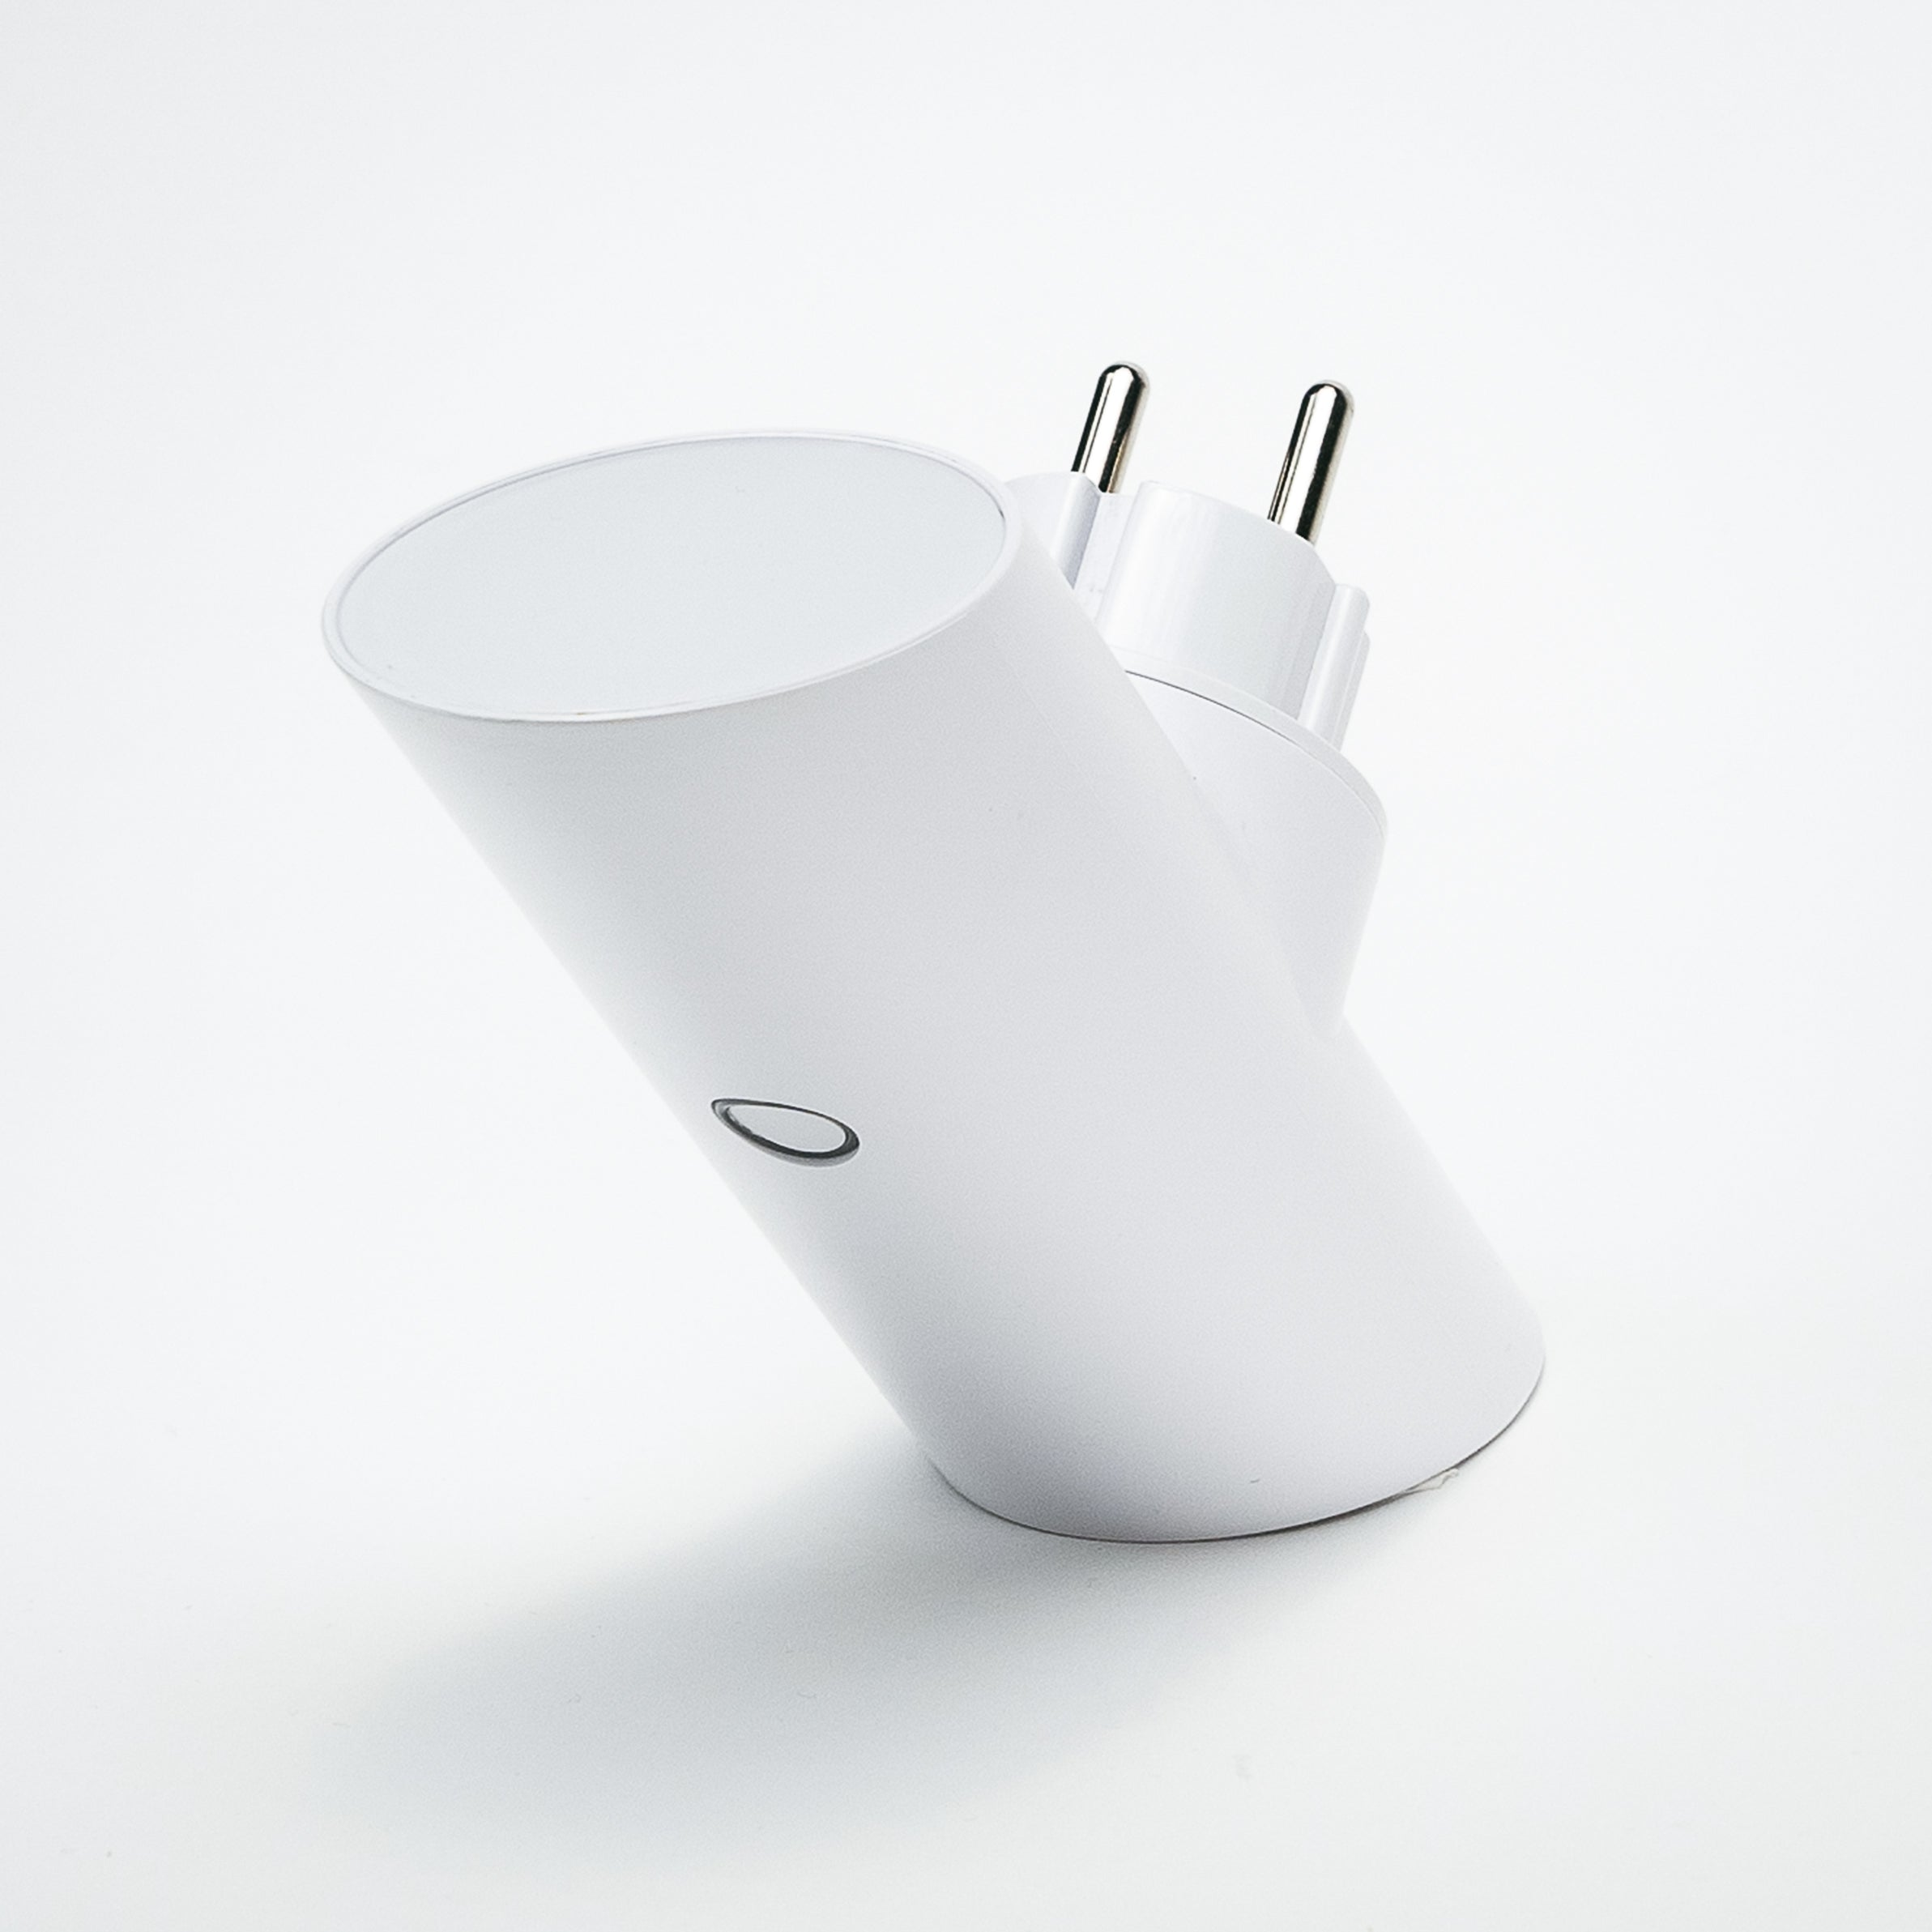 4 Weiß SMART Apple, Sony Adapter Samsung, etc...., POWER-HUBS Bose, mit TECH Spotlight Wallcharger